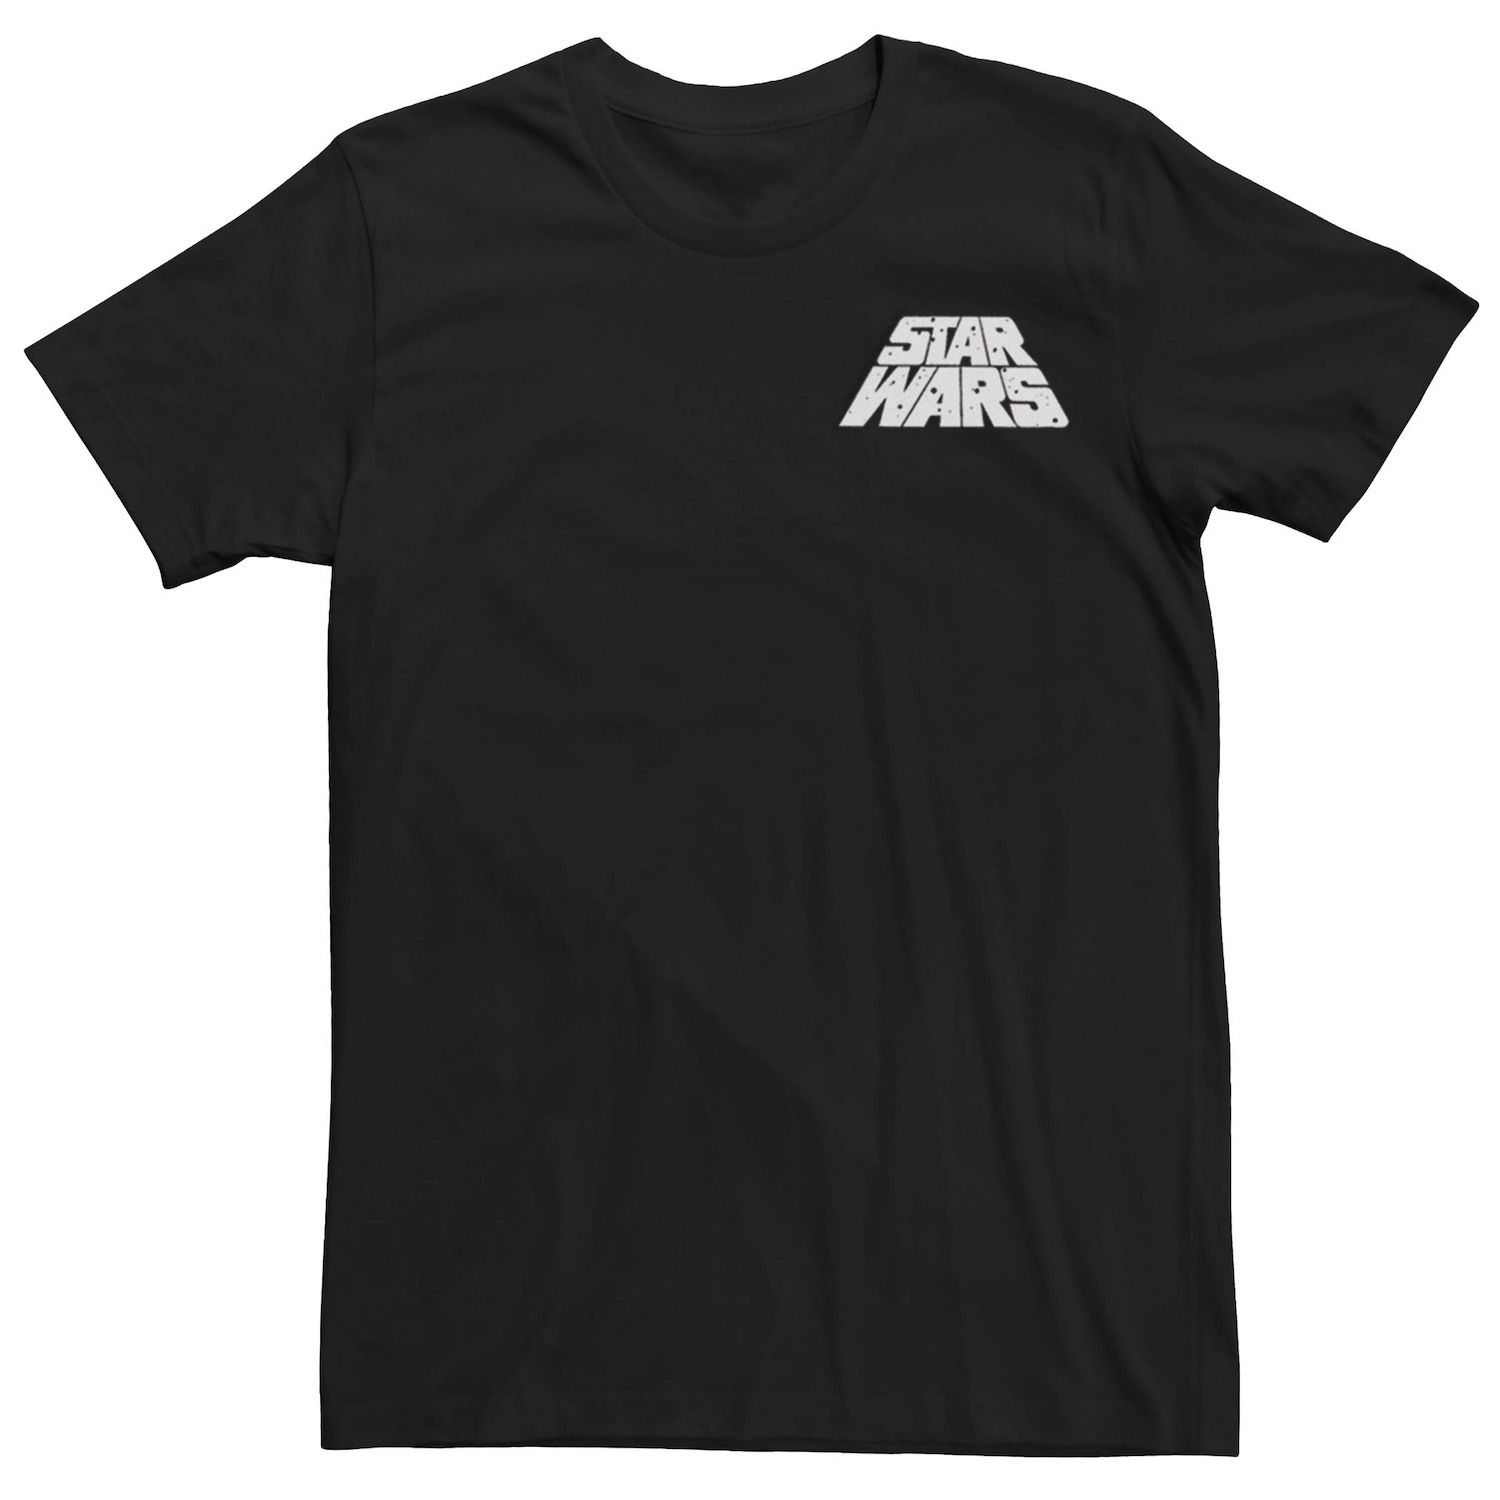 Мужская футболка с логотипом в крапинку и карманами Star Wars цена и фото